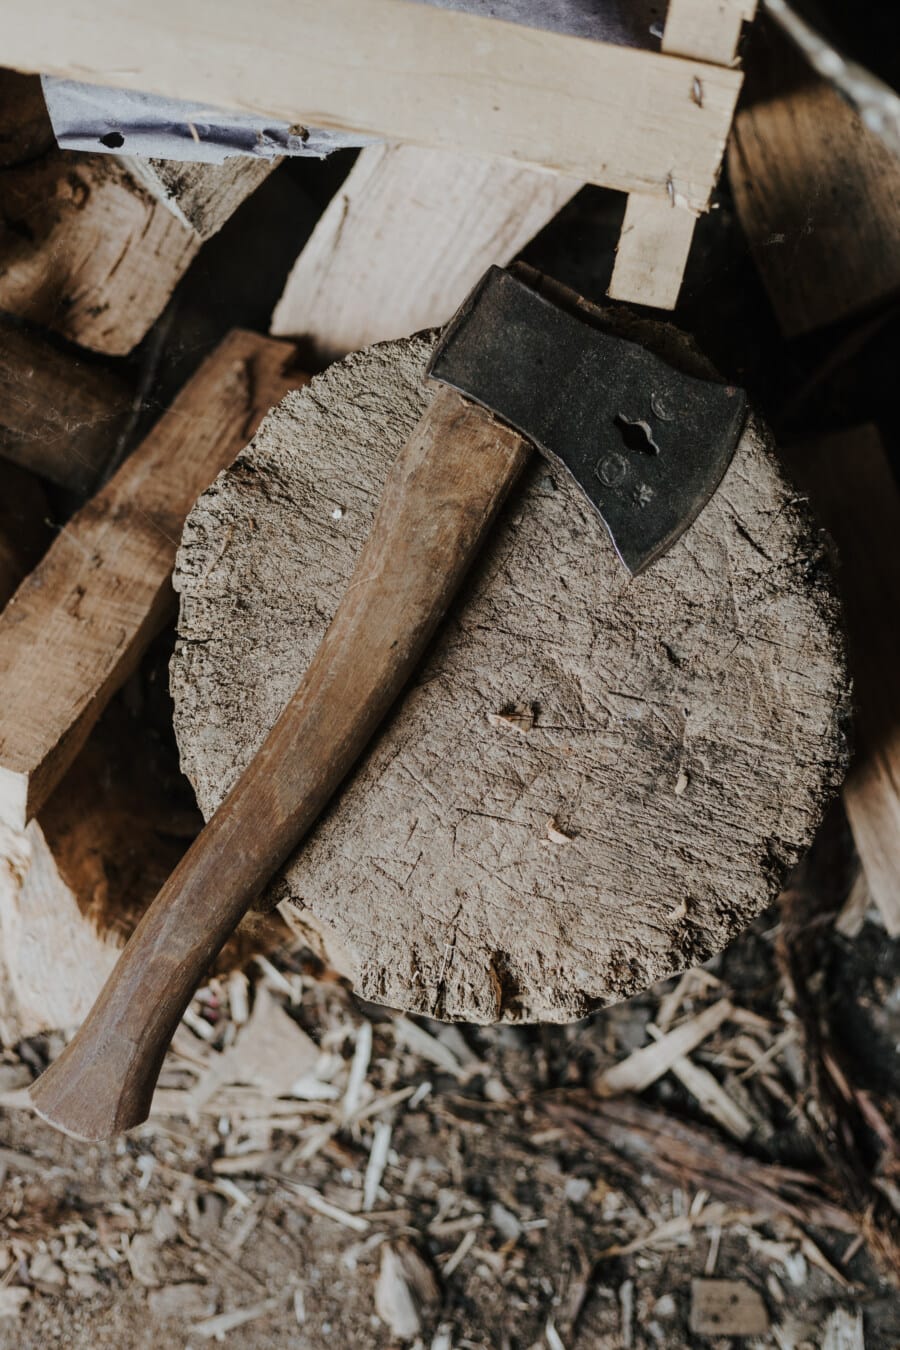 sjekira, lijevano željezo, ručni alat, drva za ogrjev, alat, drvo, rezač, oštar, Drvna piljevina, željezo